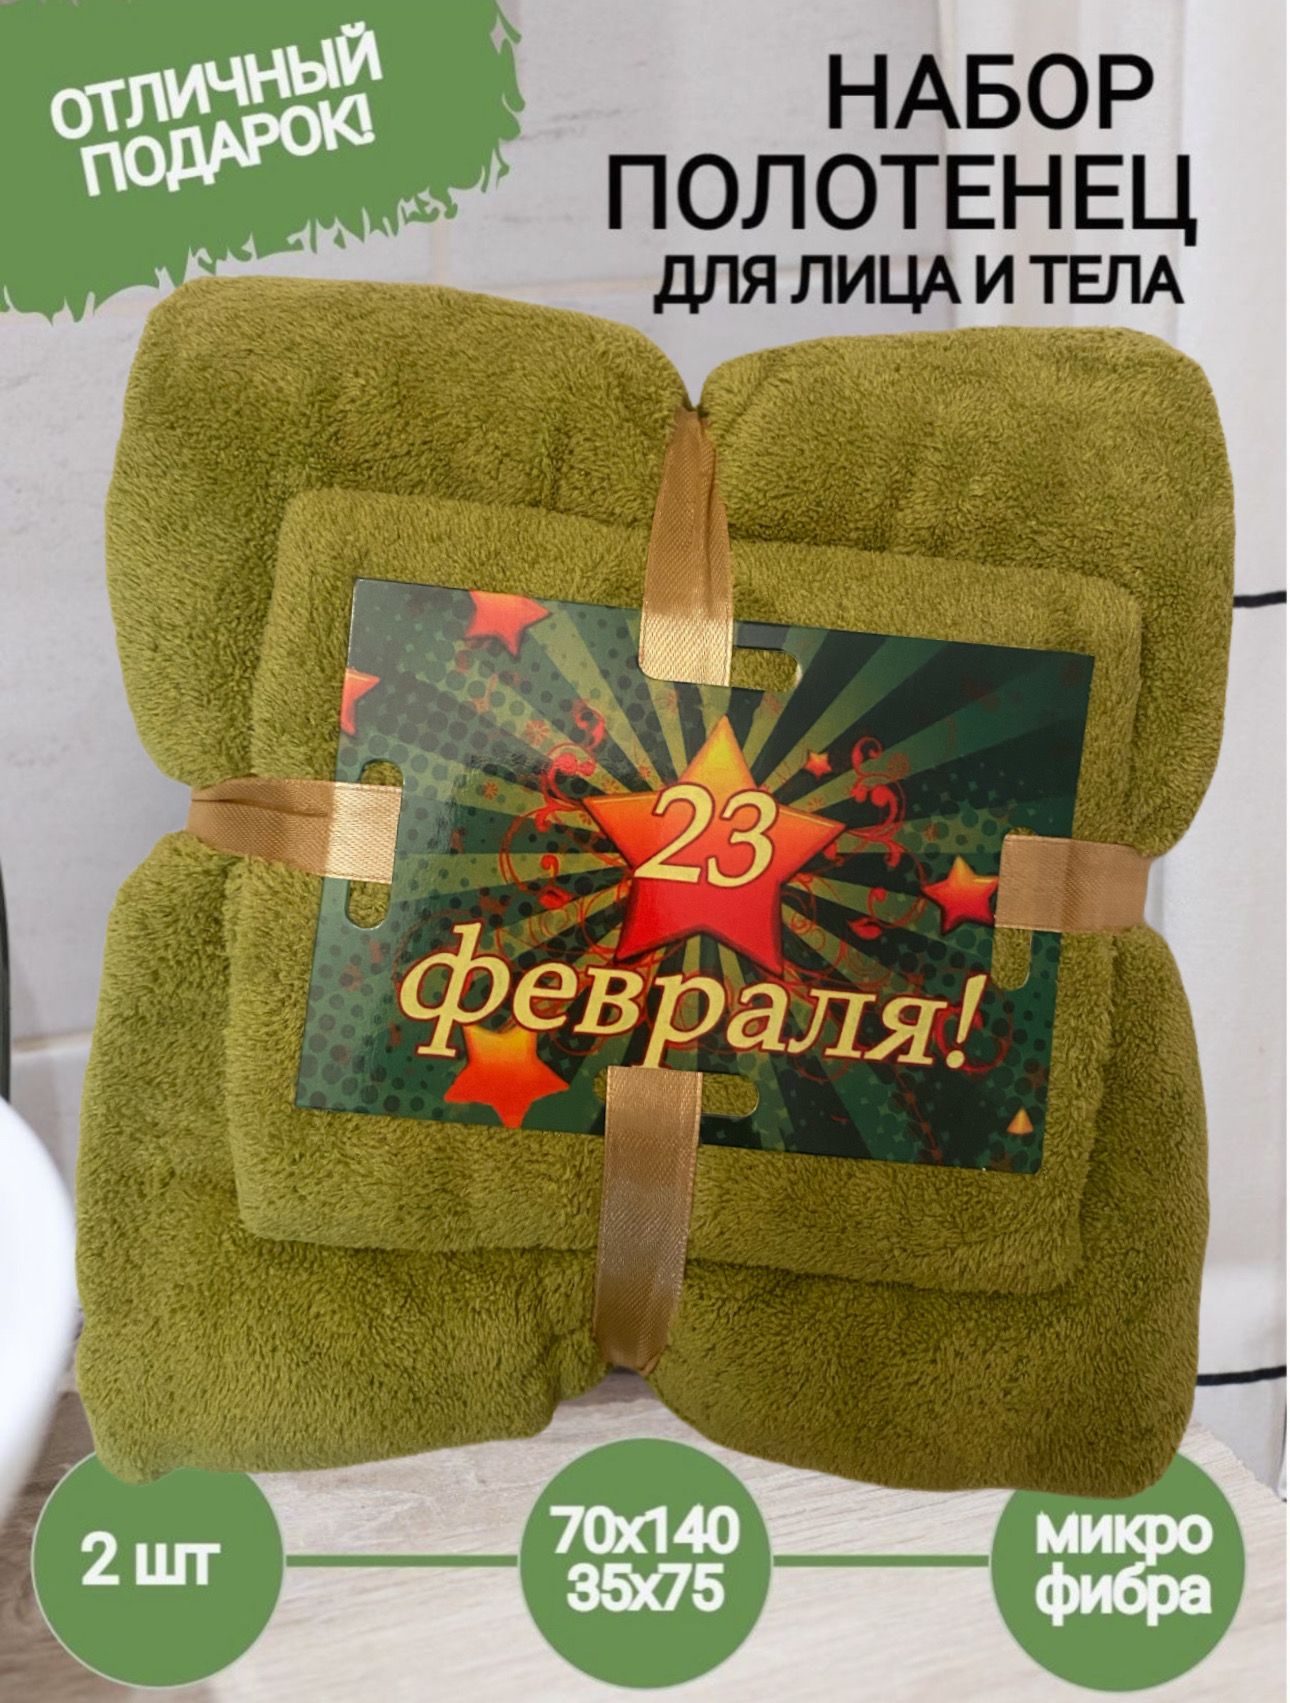 Подарочный набор полотенец 7я Атмосфера благополучия 23 февраля, цвет зеленый